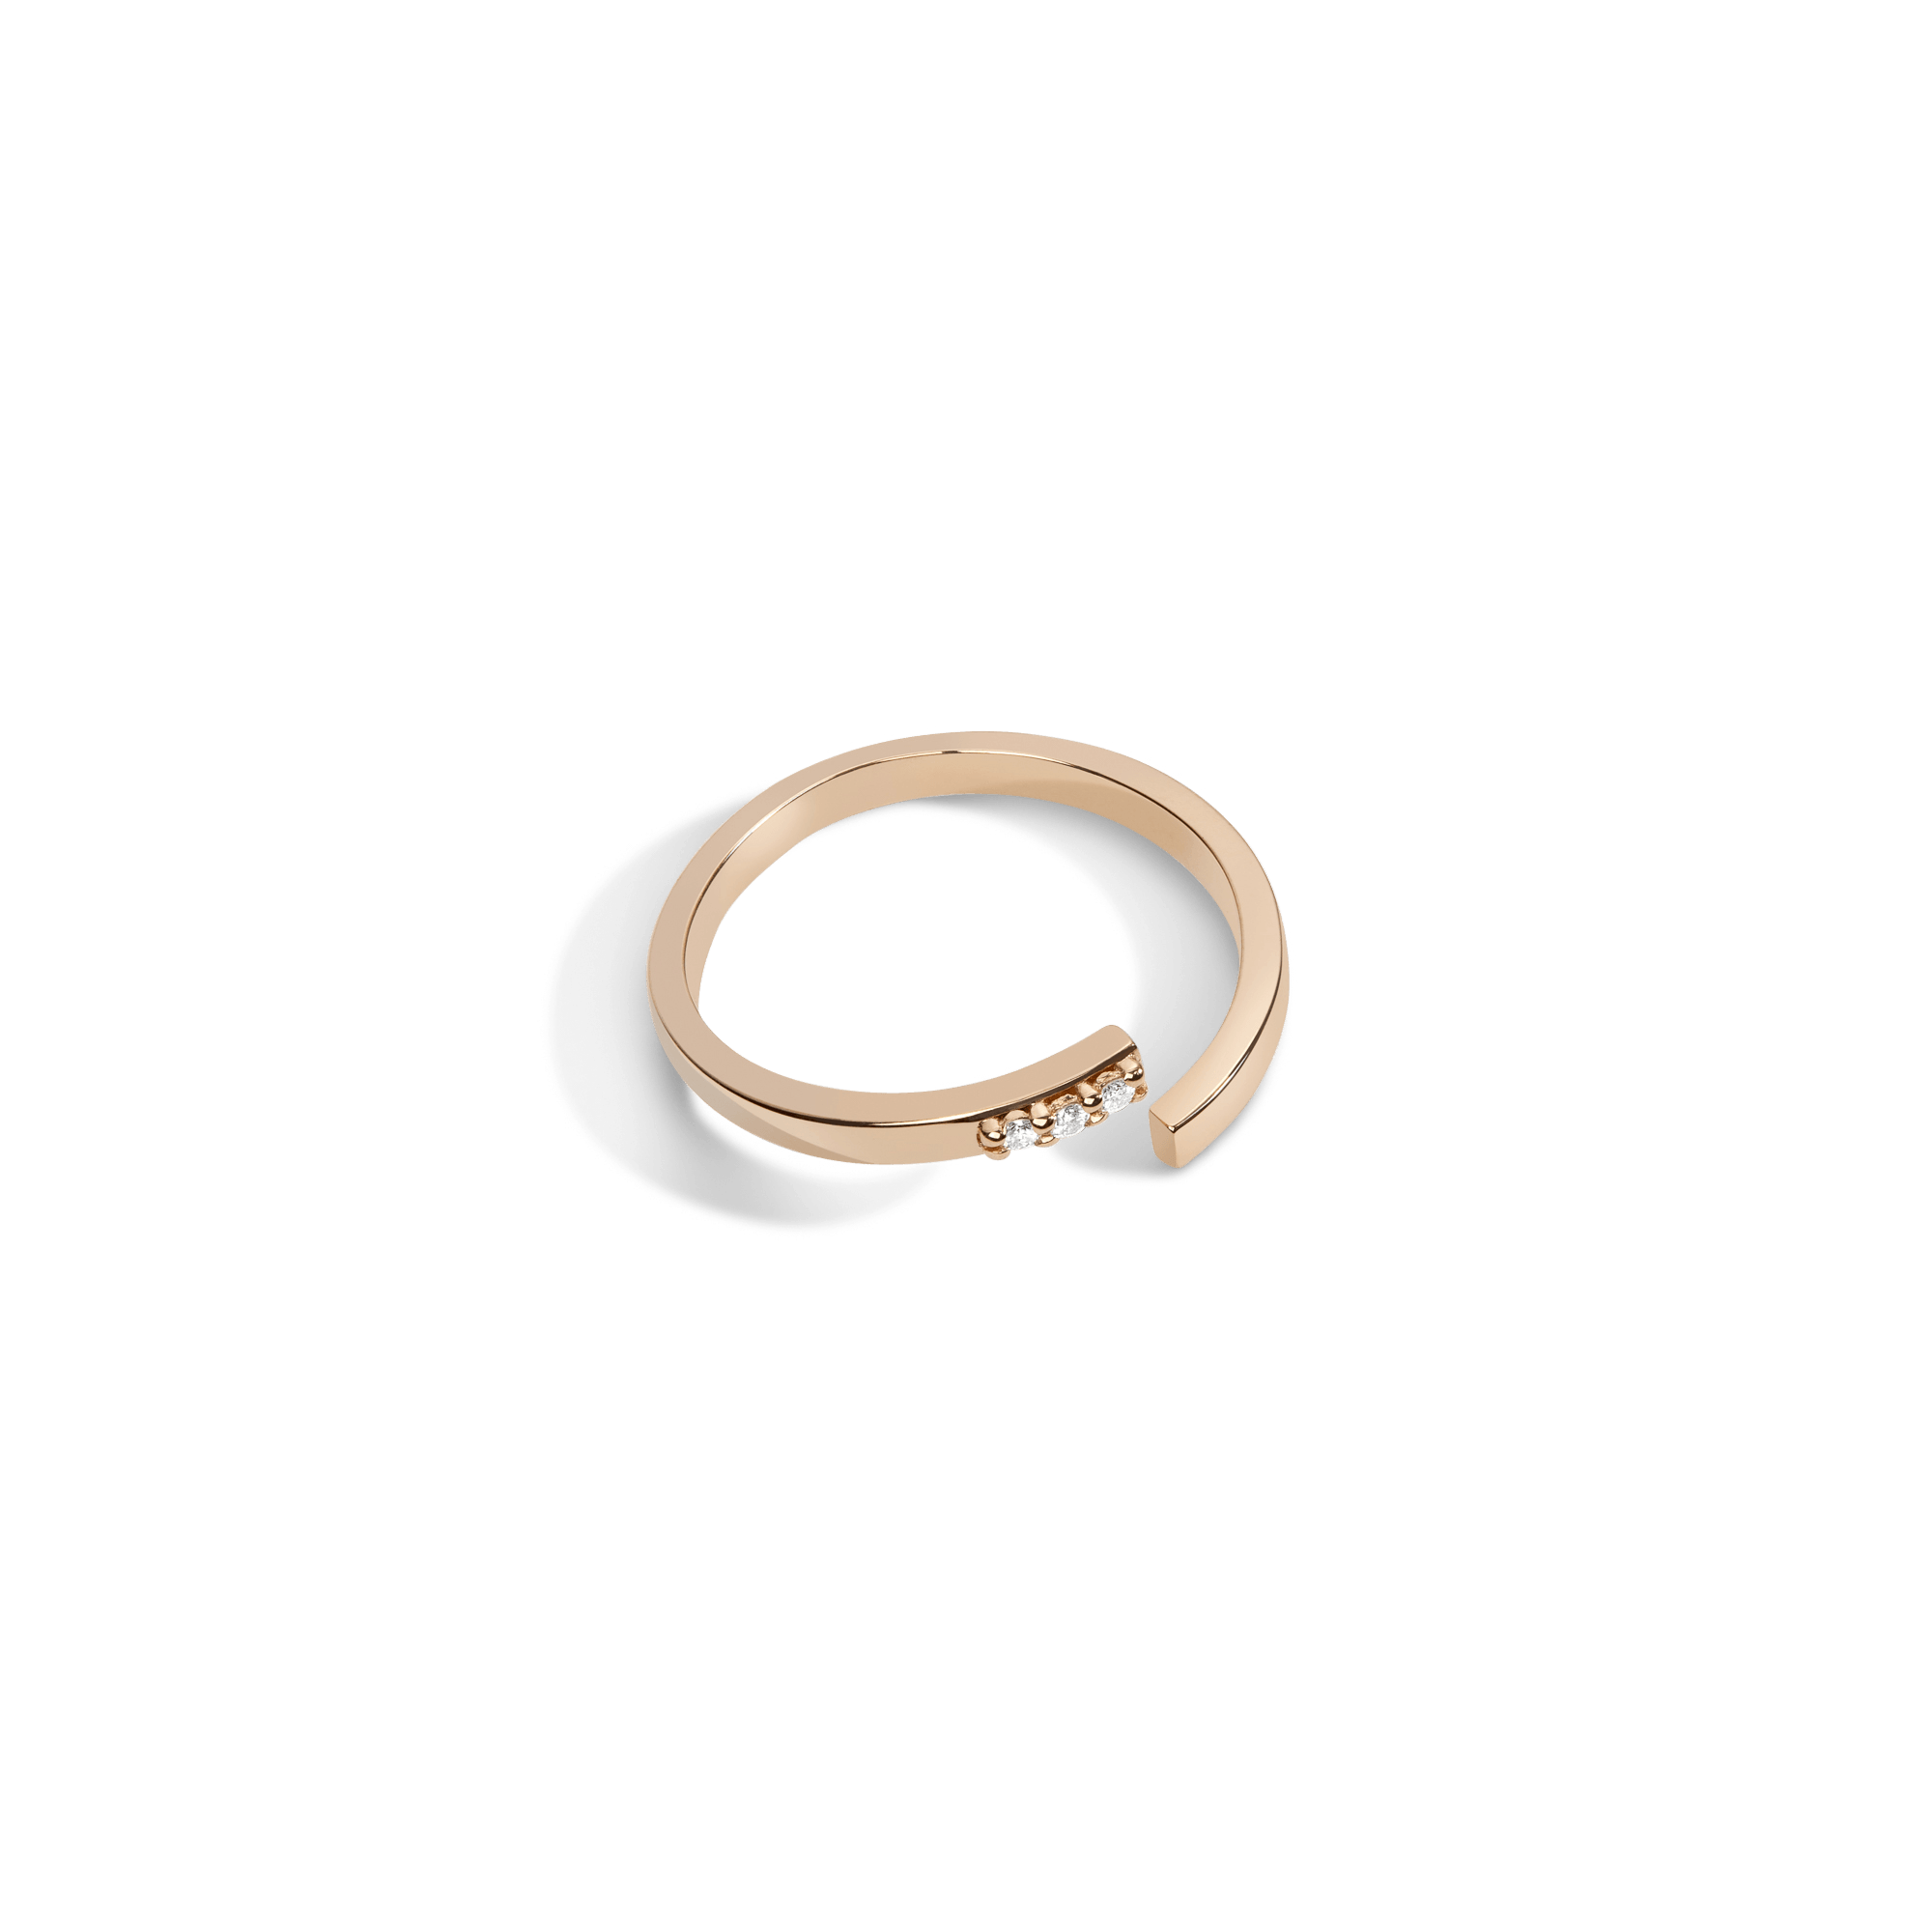 Mini Wraparound Ring with Diamonds in Yellow, Rose or White Gold